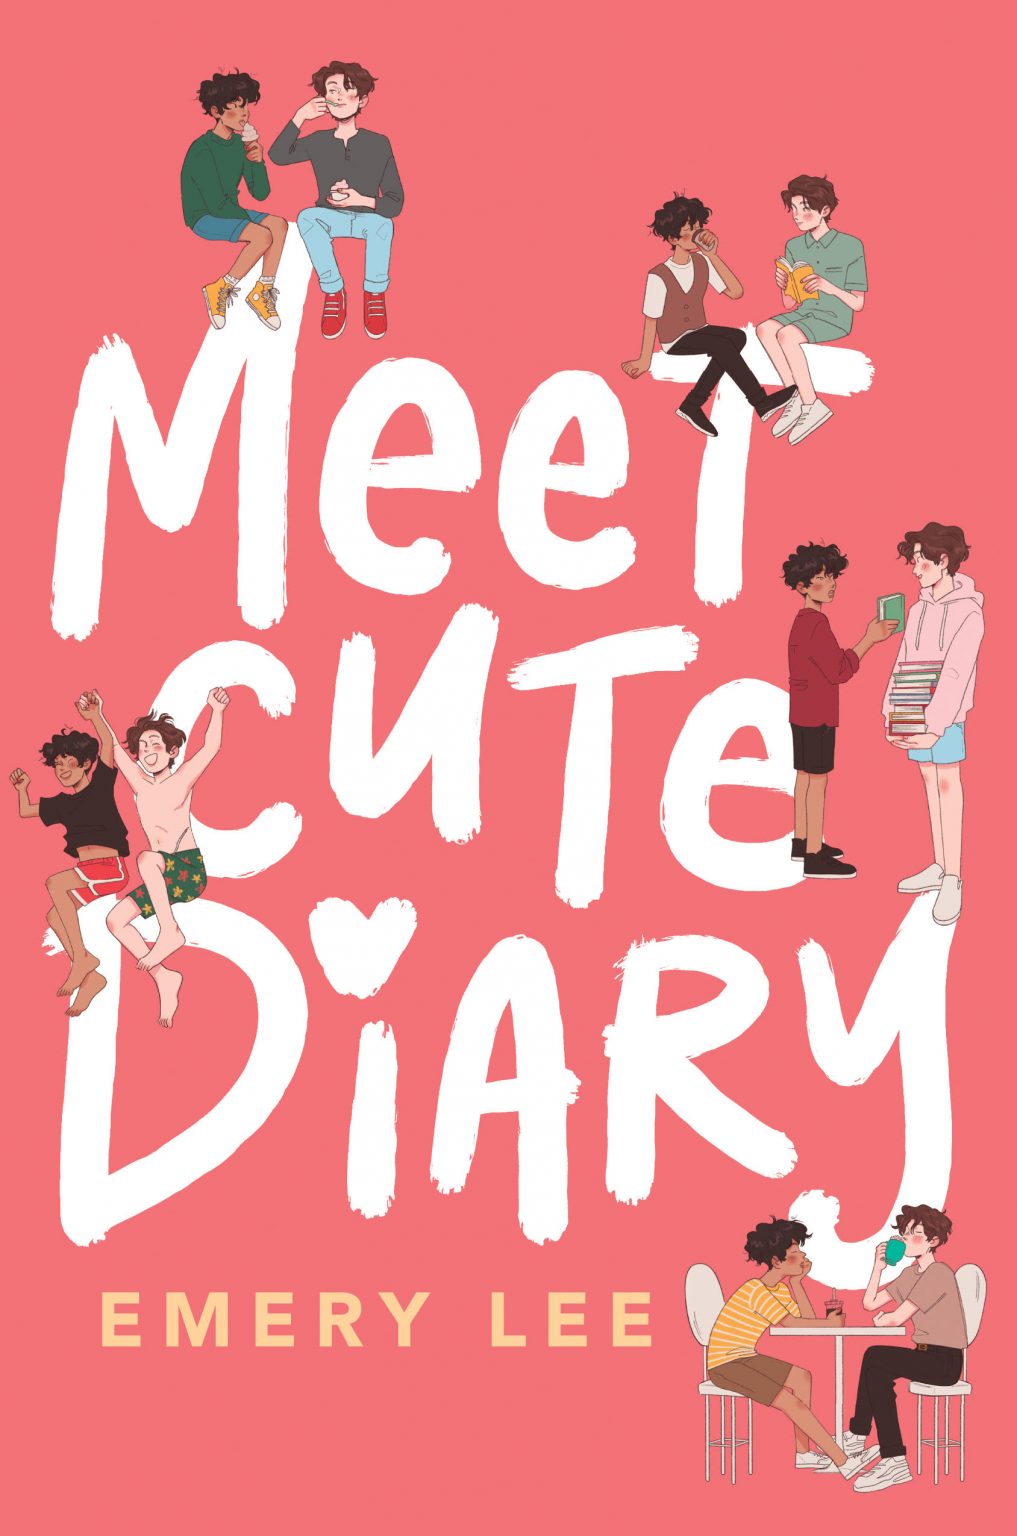 Meet Cute Diary books